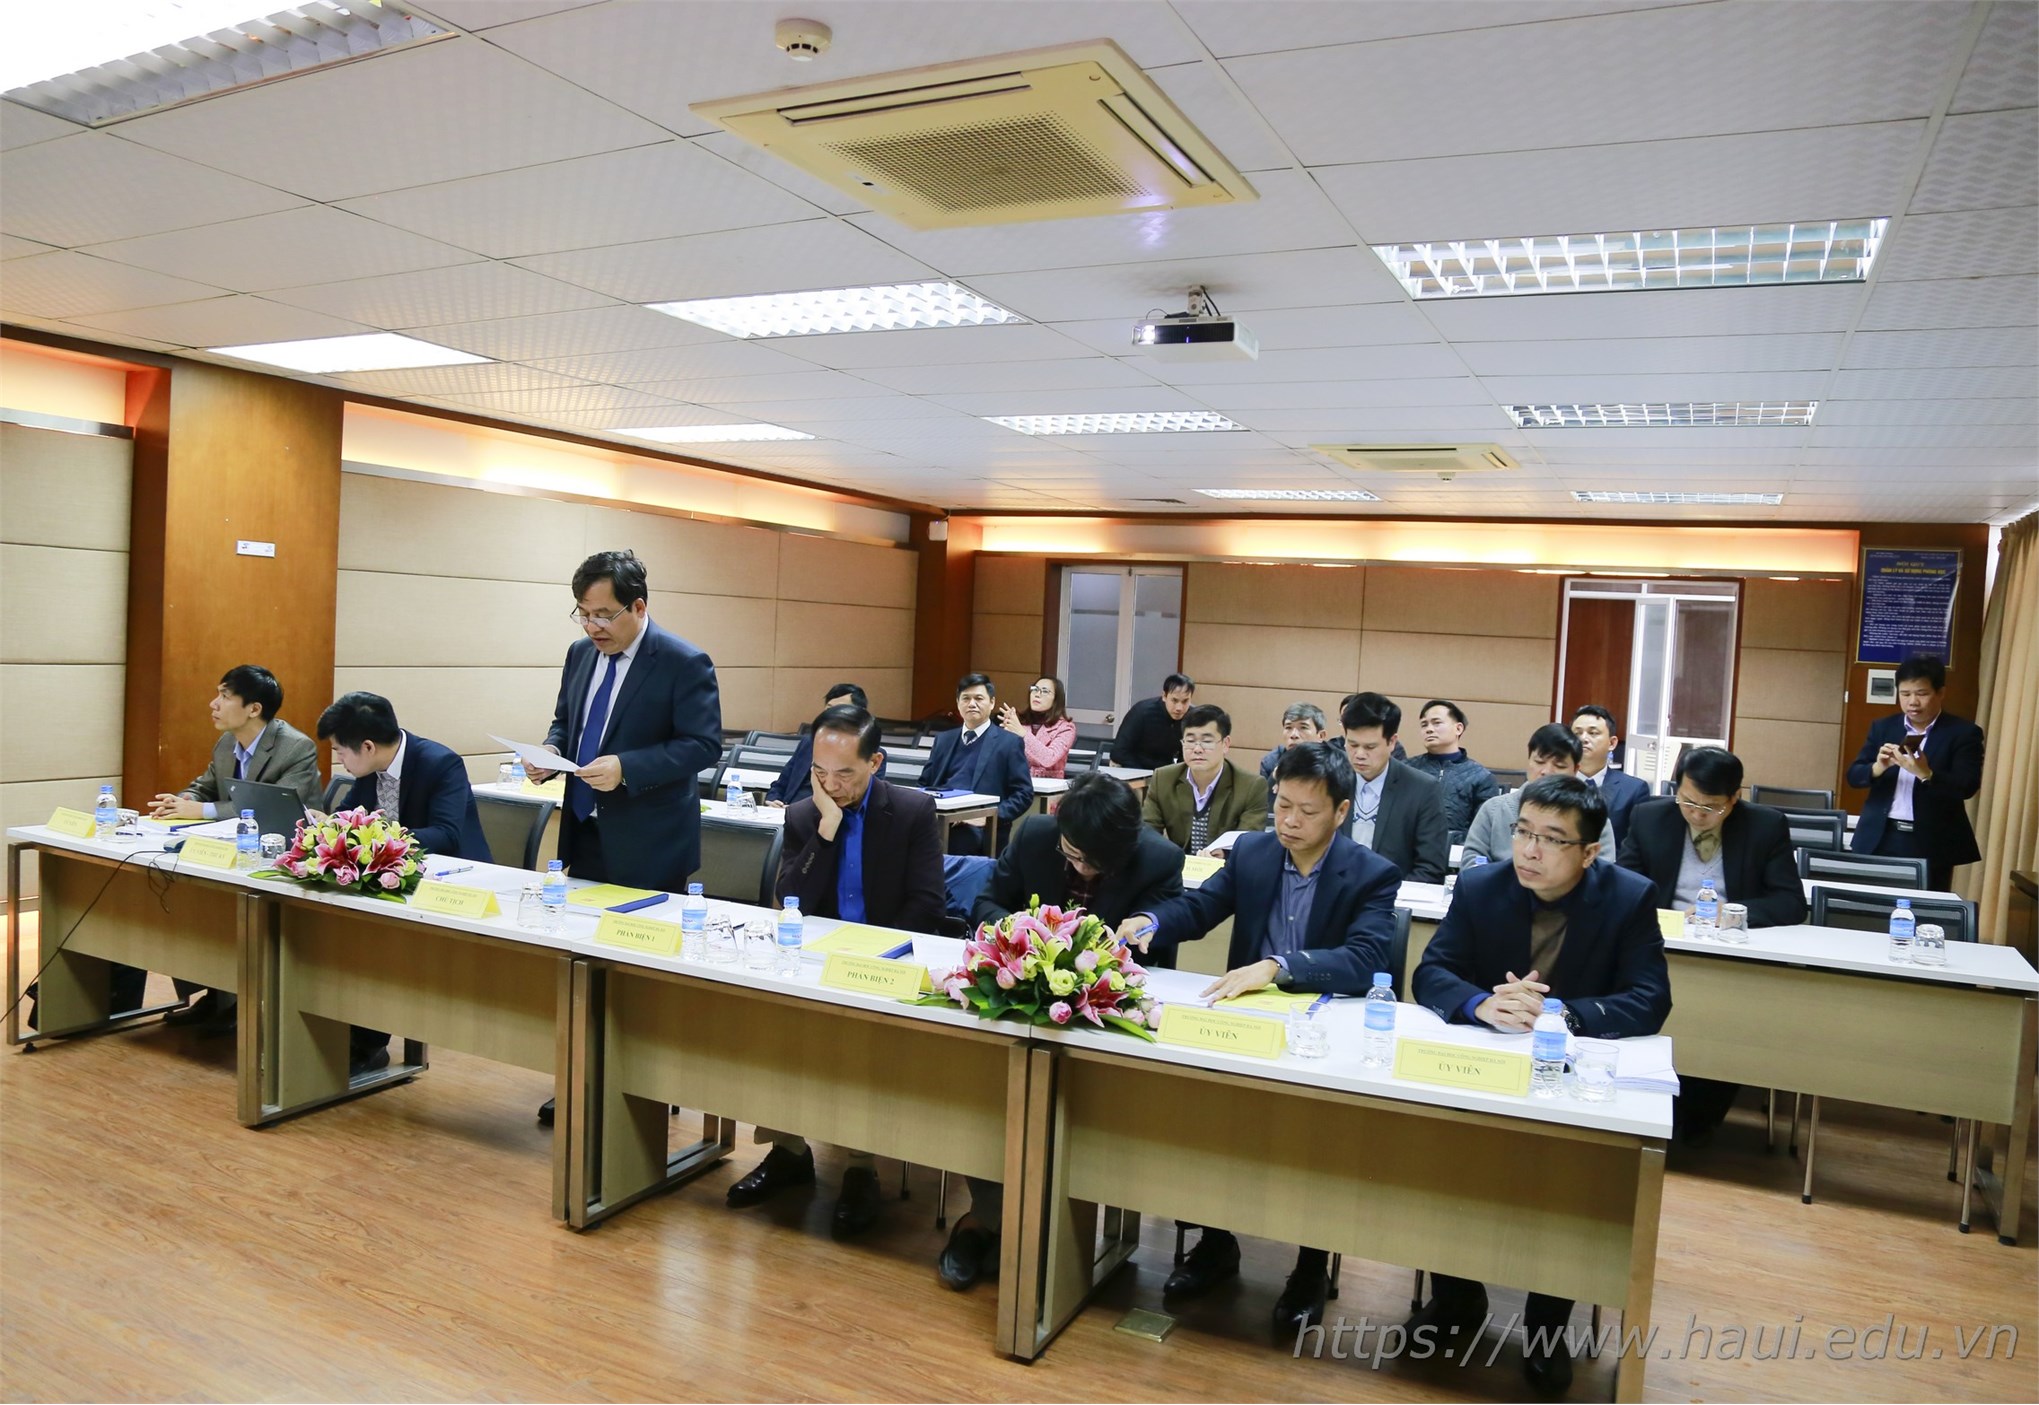 Đại học Công nghiệp Hà Nội tổ chức đánh giá luận án tiến sĩ cấp cơ sở chuyên ngành Kỹ thuật cơ khí